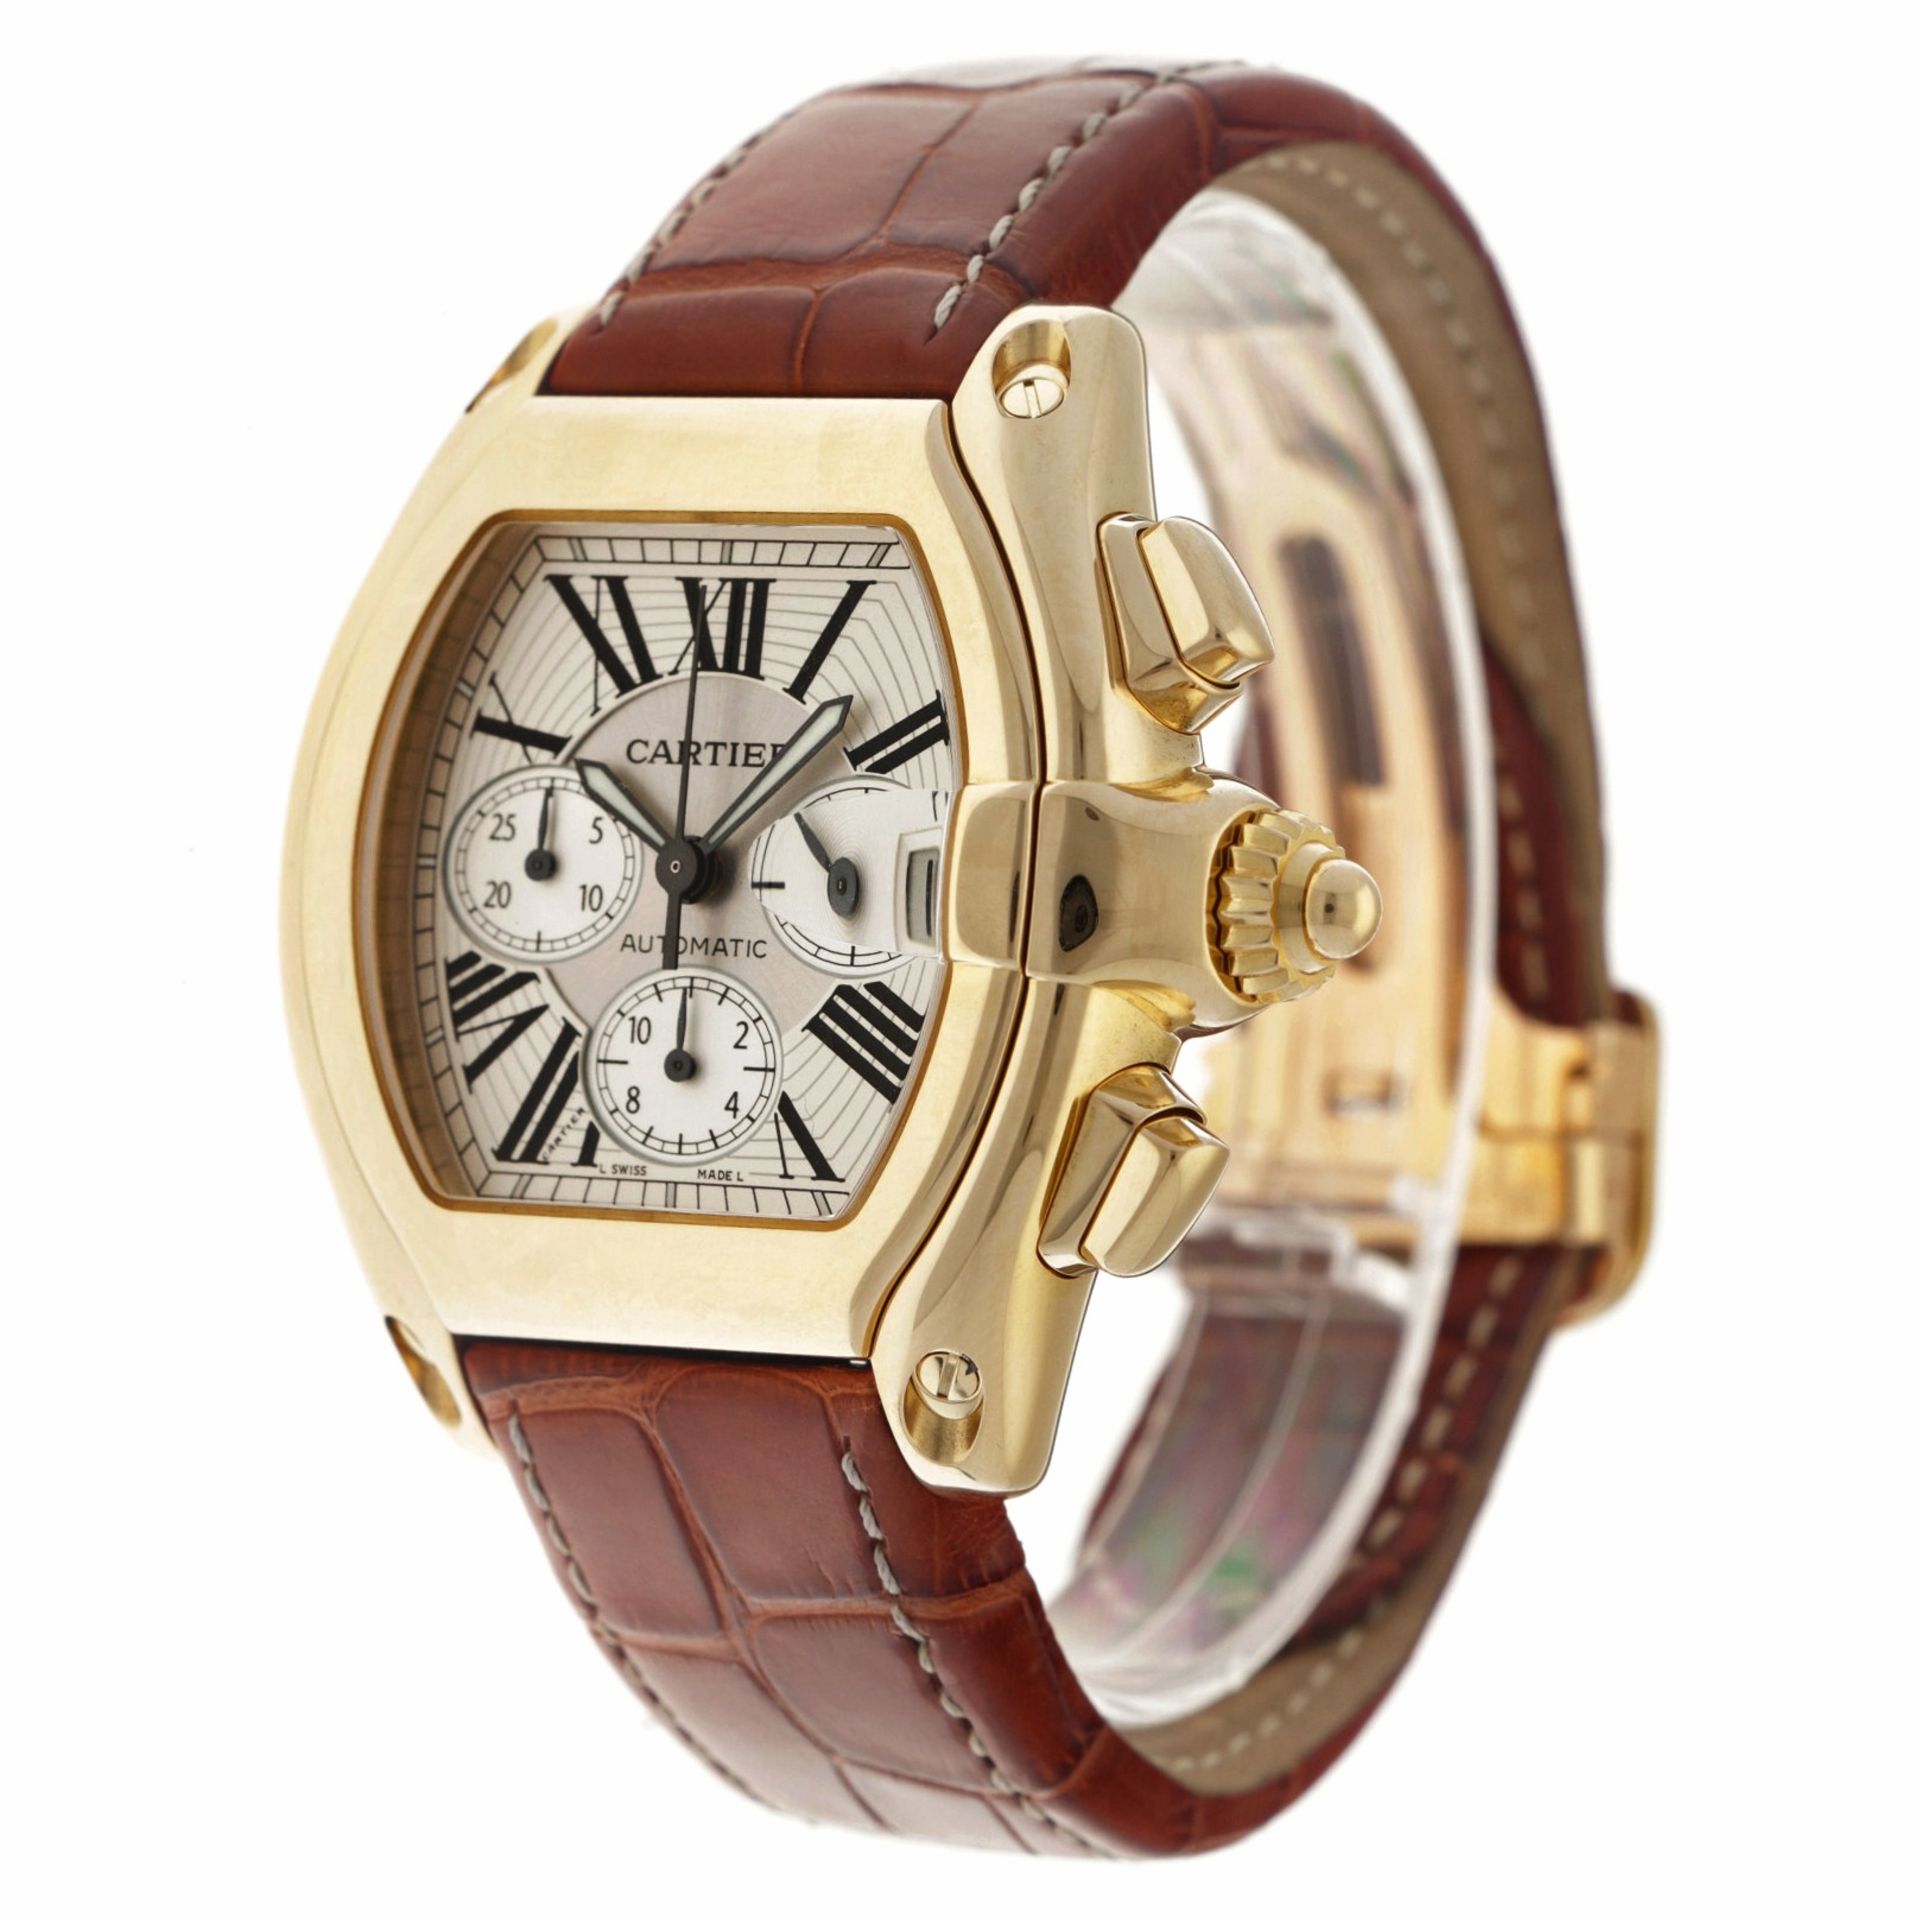 Cartier Roadster 2619 - Men's watch. - Image 2 of 6